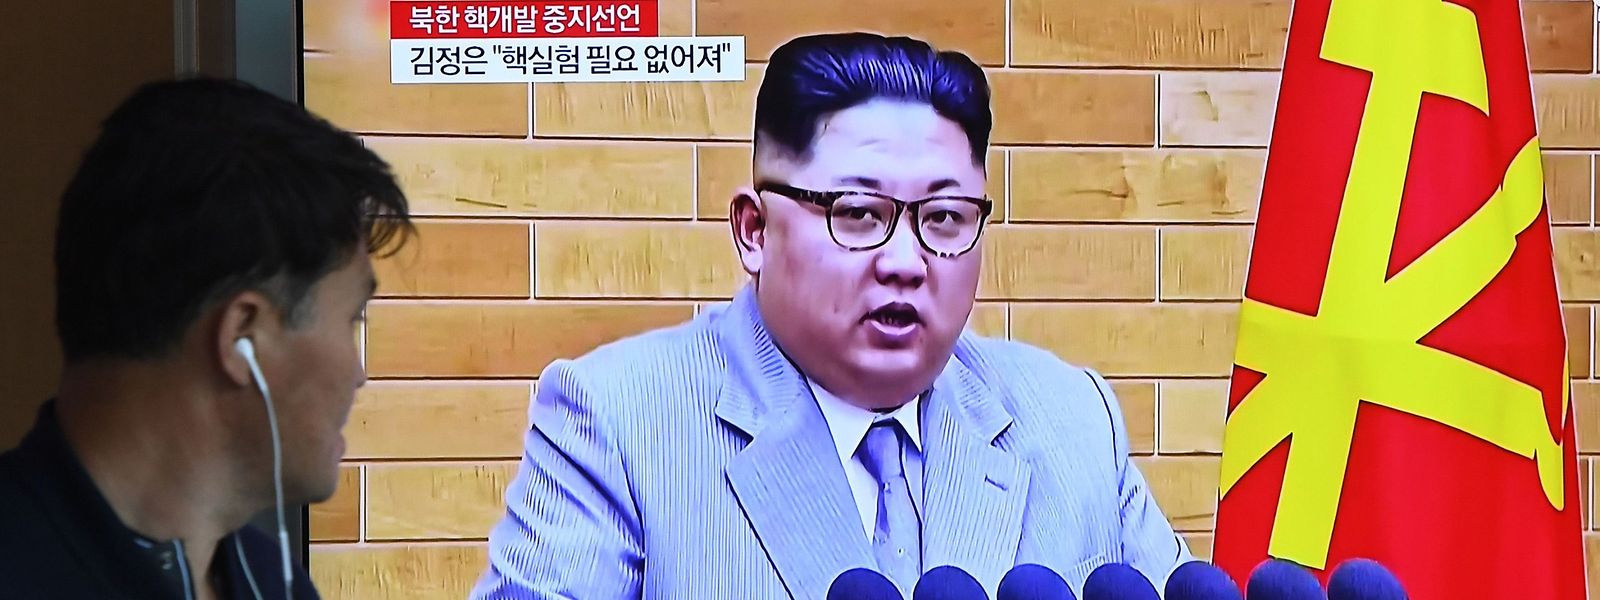 O líder da Coreia do Norte, Kim Jong Un, anunciou na sexta-feira à noite que suspendeu os testes nucleares e o lançamento de mísseis de longo alcance e que tem planos para encerrar as suas instalações de testes nucleares